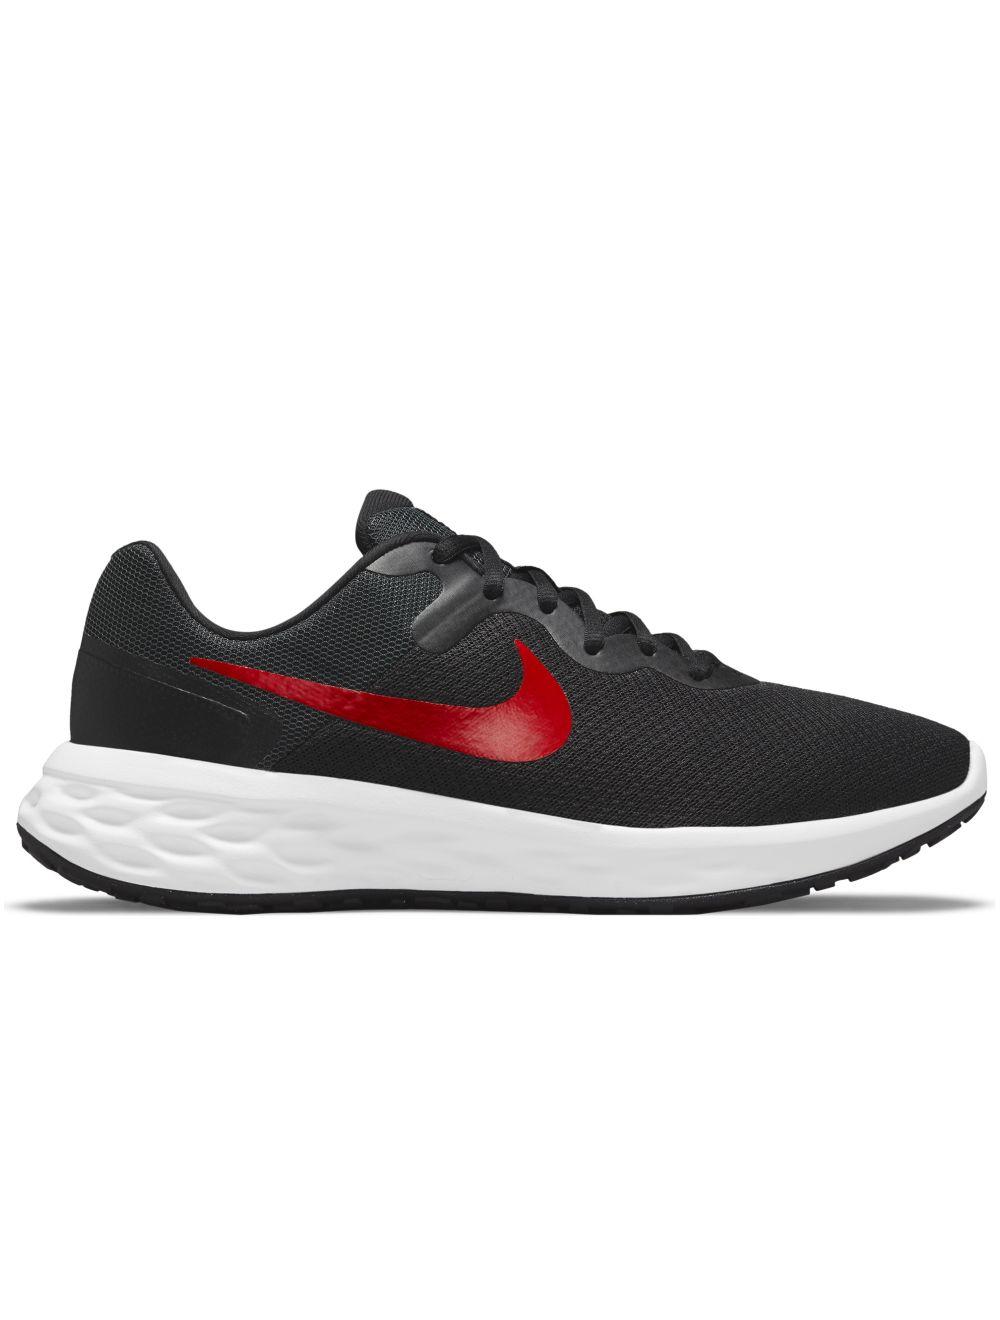 Zapatilla Nike Running Revolution 6 Negro/Rojo Hombre